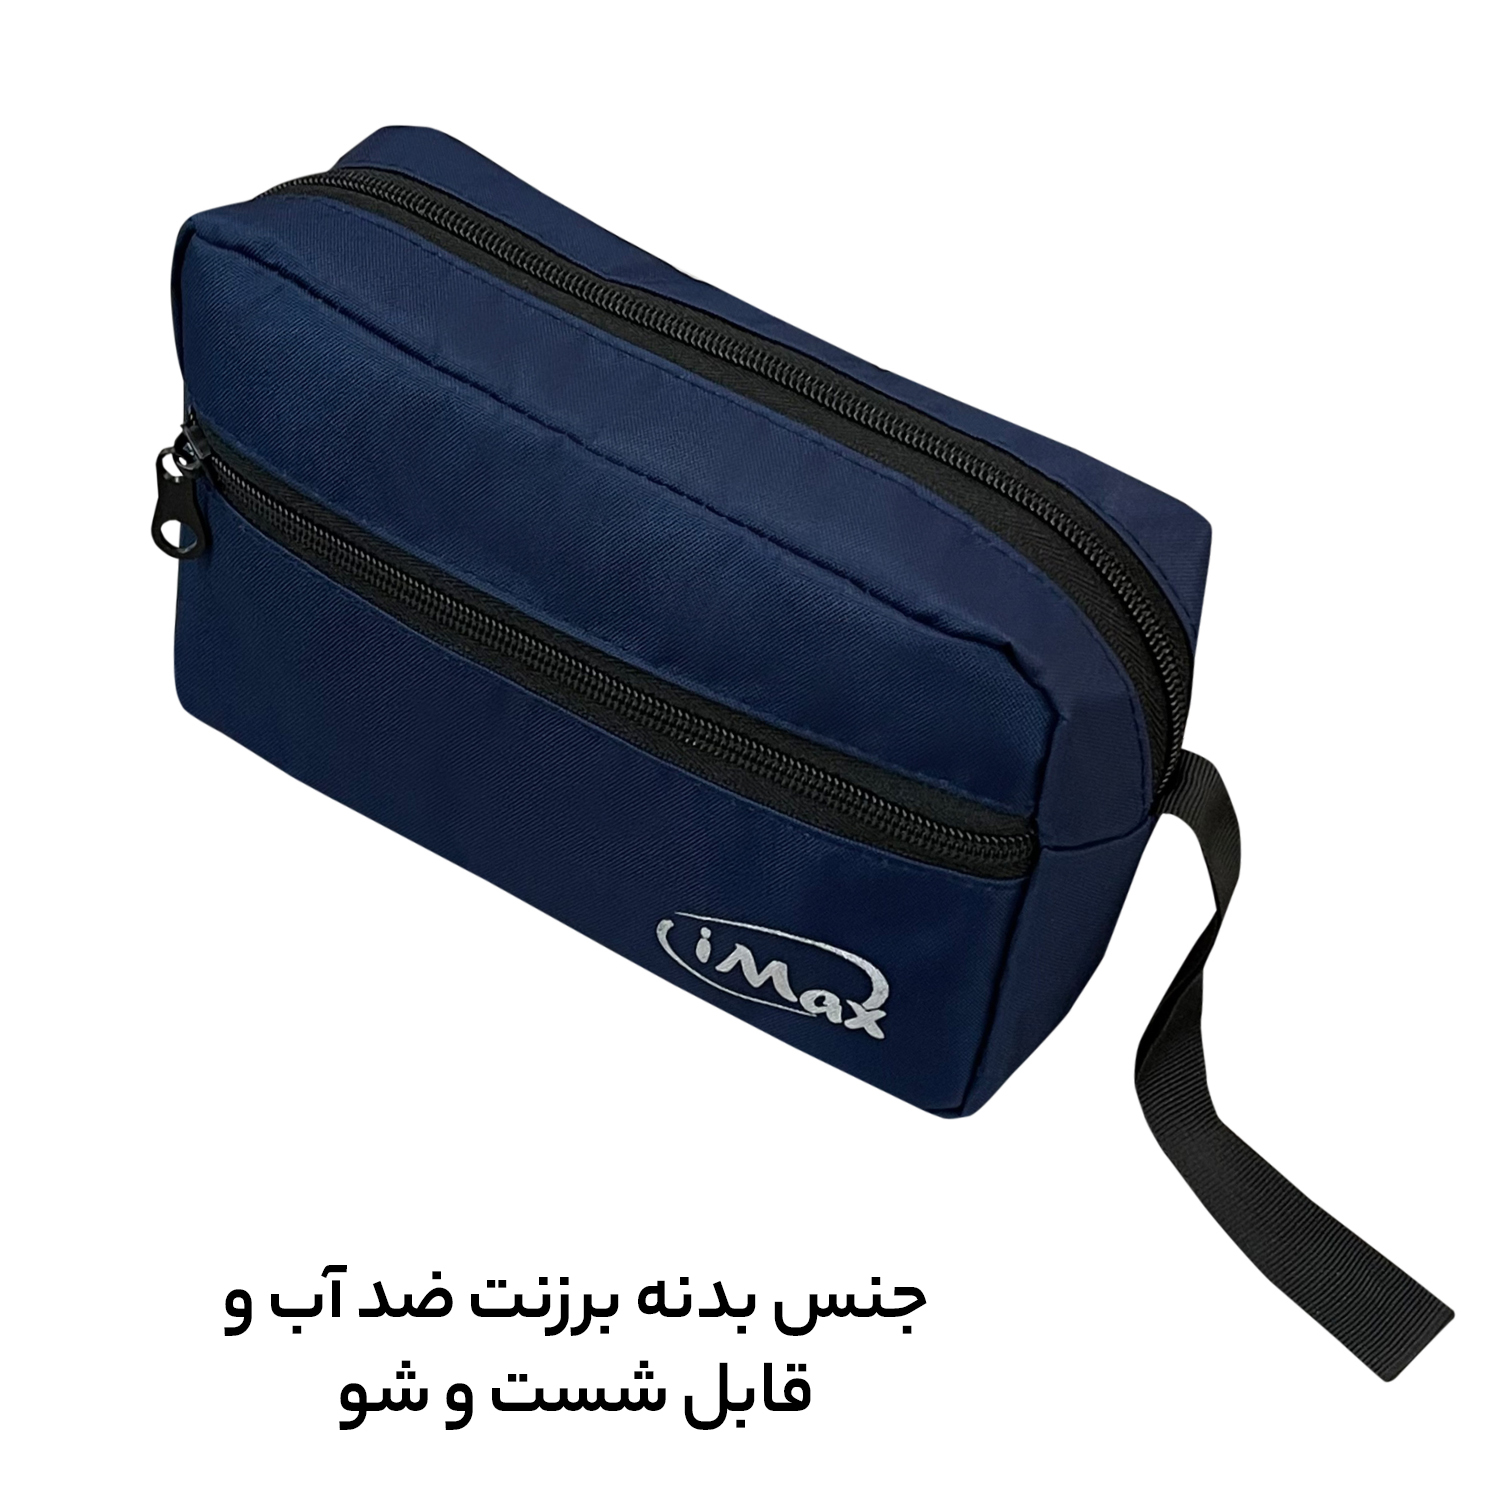 کیف لوازم شخصی آیمکس کد MAX03 -  - 10